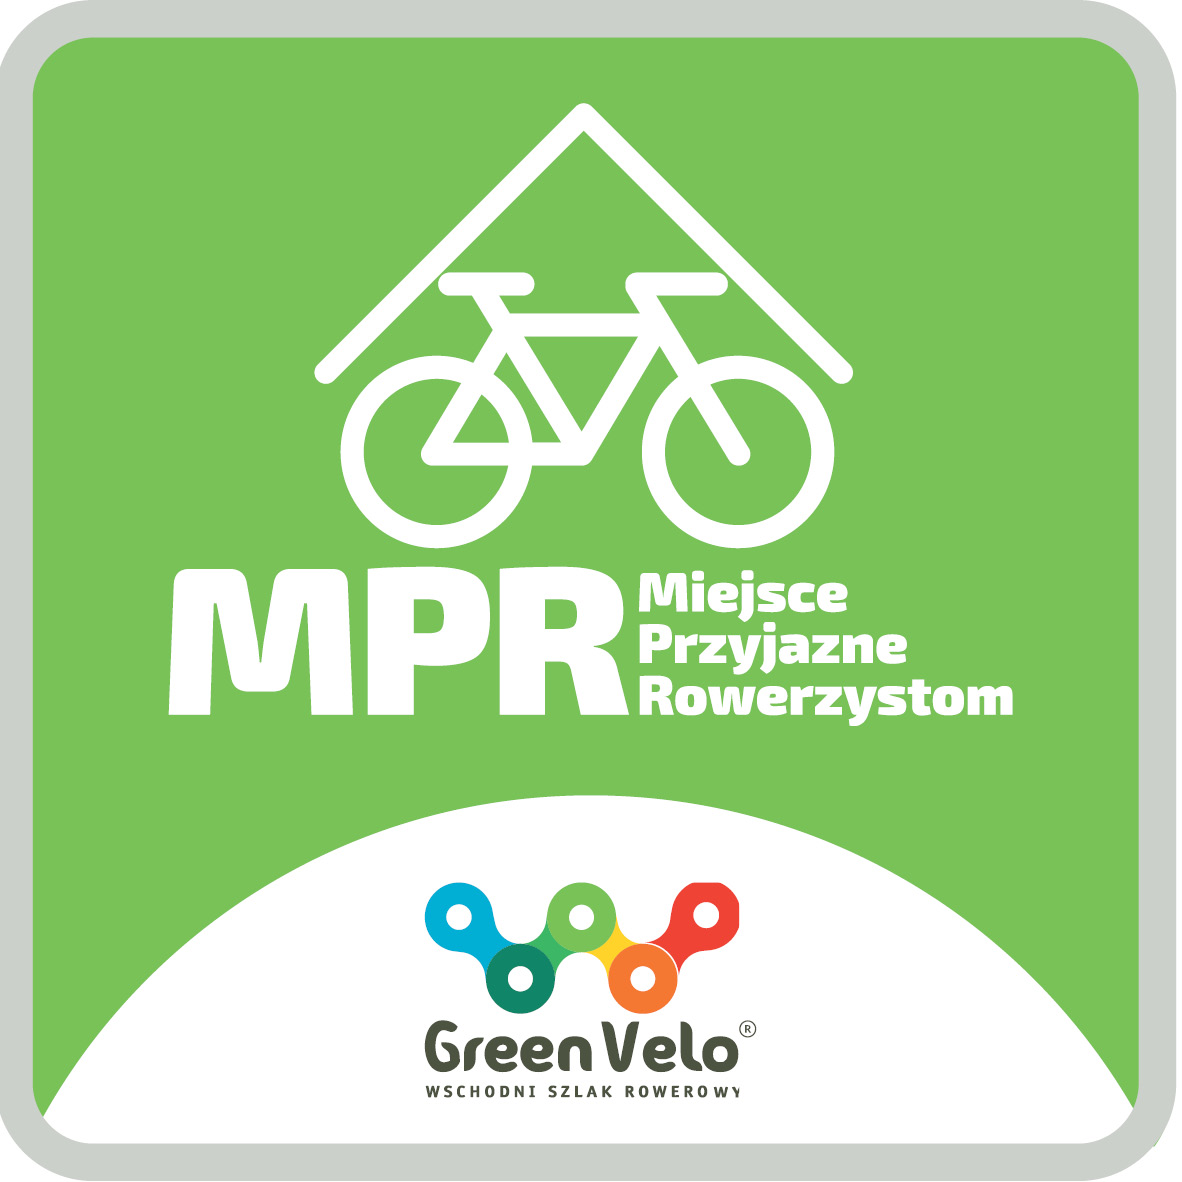 MPR Miejsca Przyjazne Rowerzystom - Green Velo